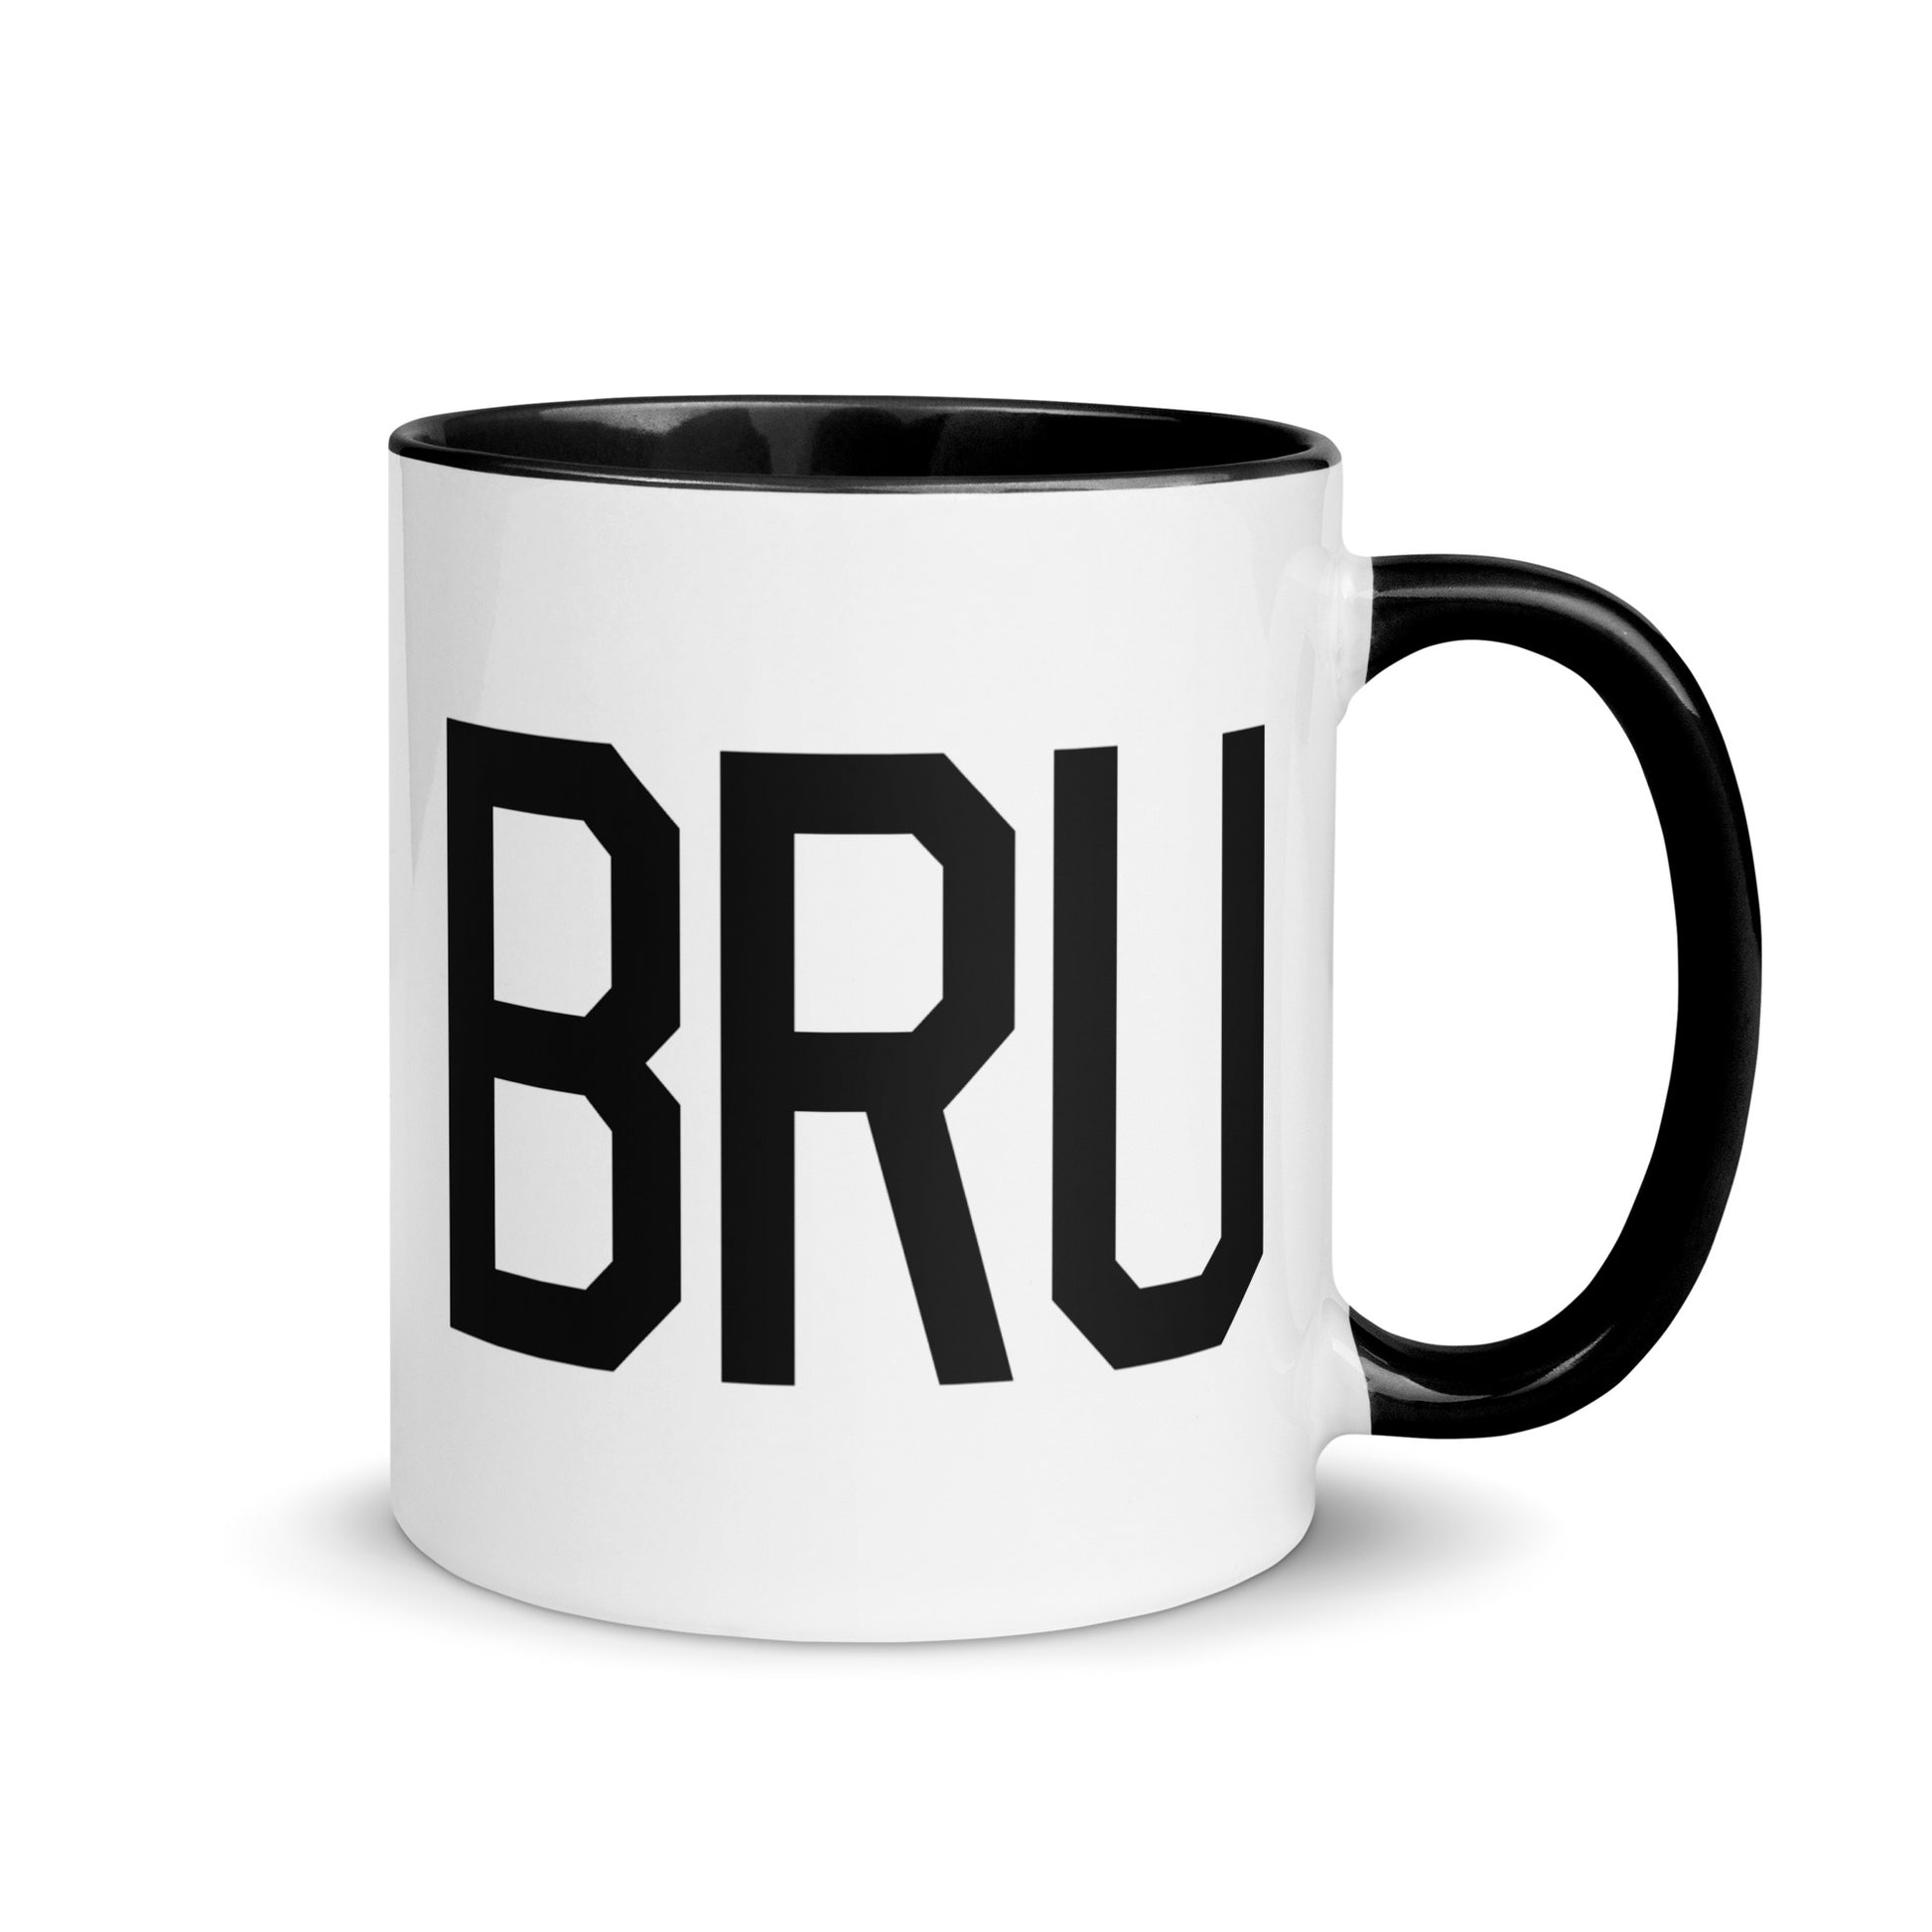 Airport Code Coffee Mug - Black • BRU Brussels • YHM Designs - Image 01